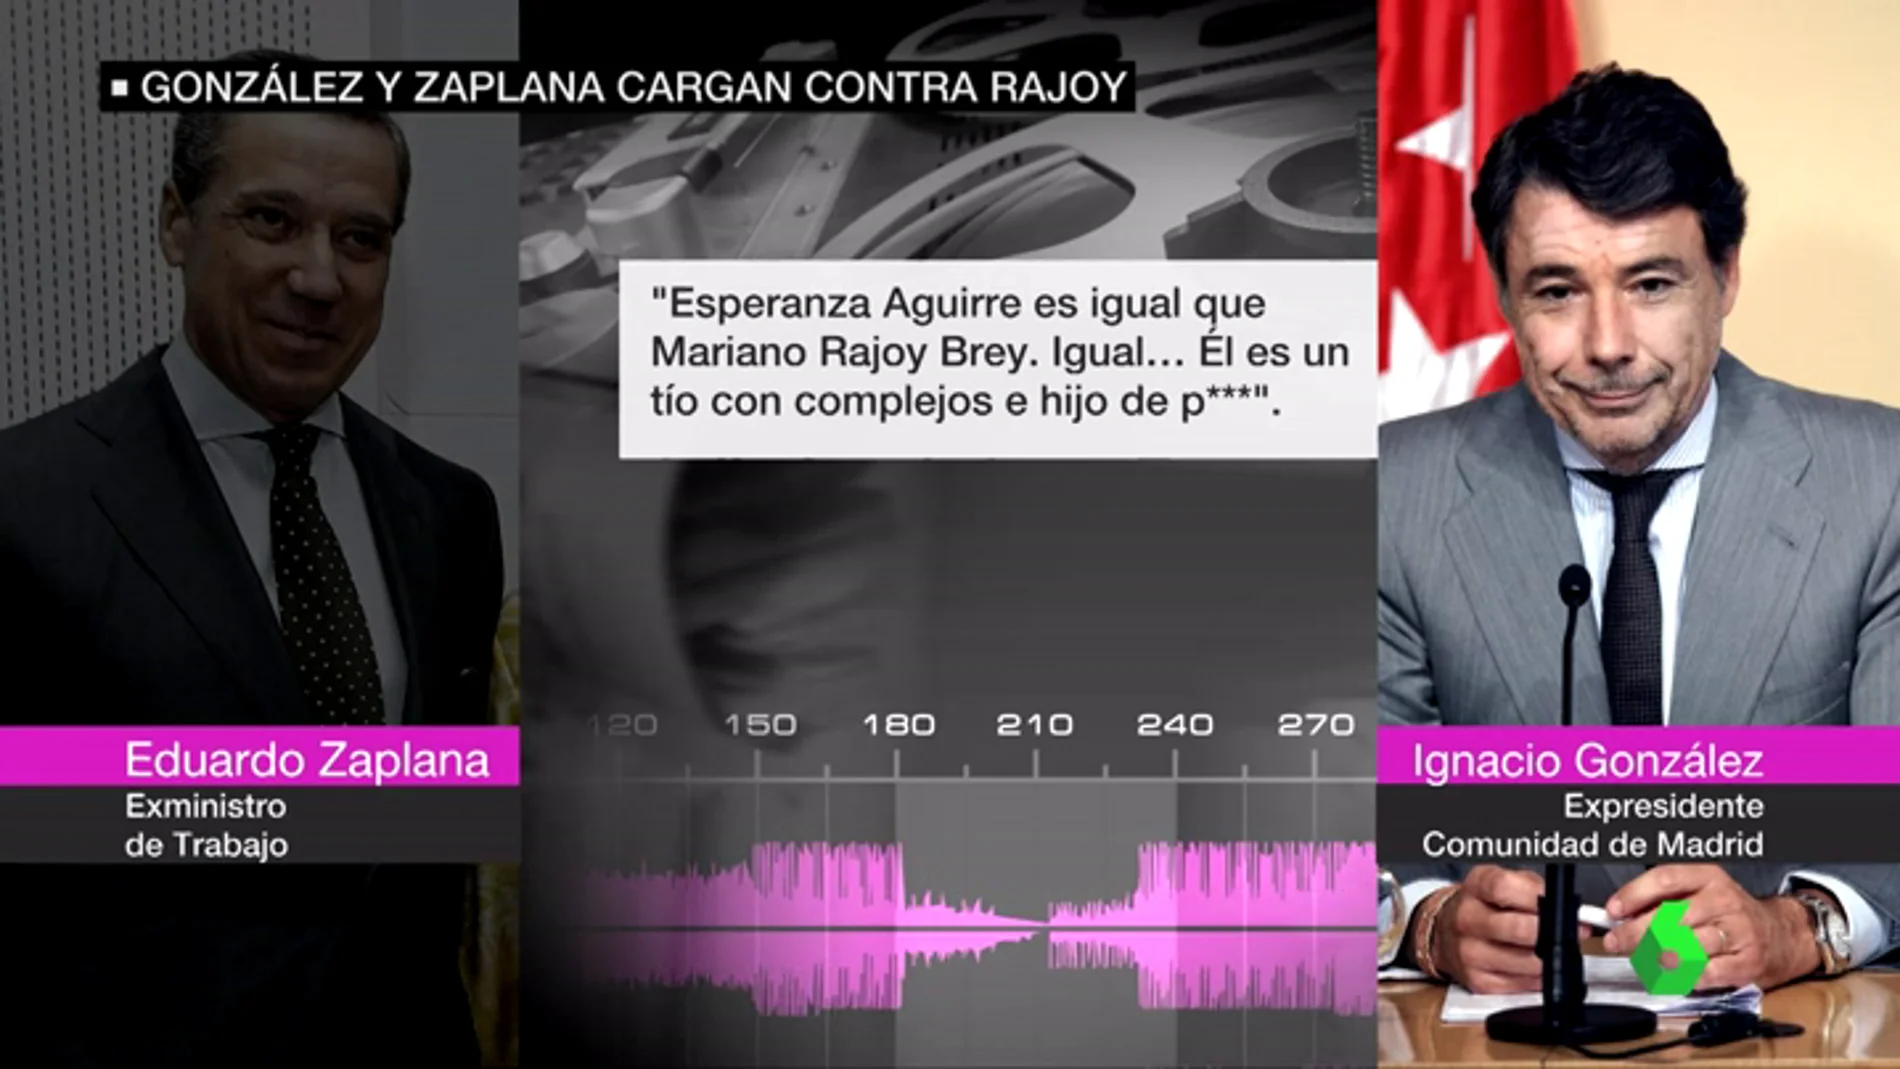 Las conversaciones de Ignacio González y Eduardo Zaplana cargando contra Rajoy